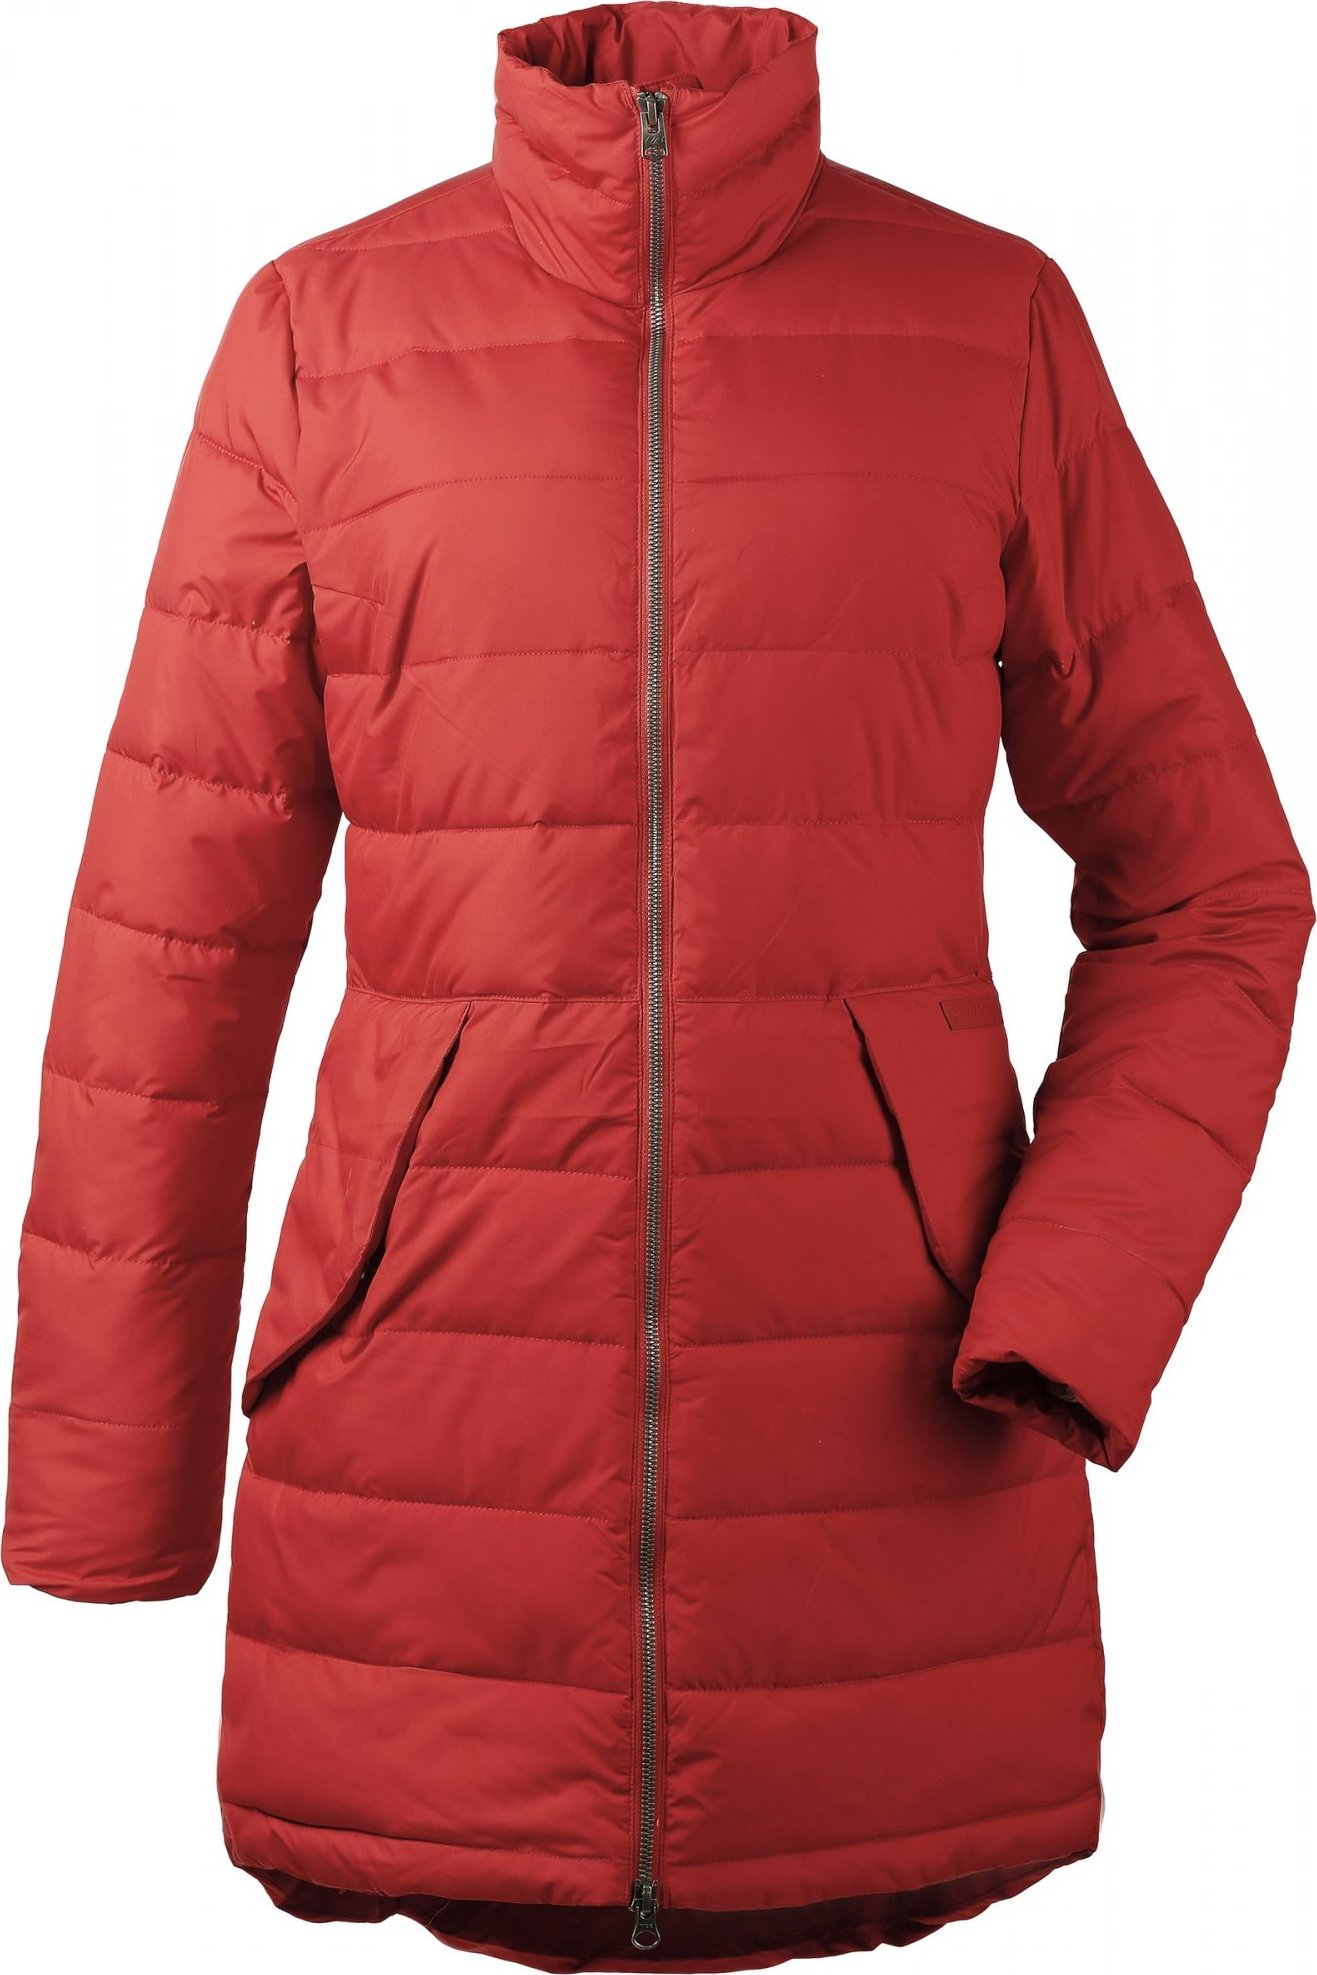 Dámský zimní kabát DIDRIKSONS Hildur oranžový Velikost: 40